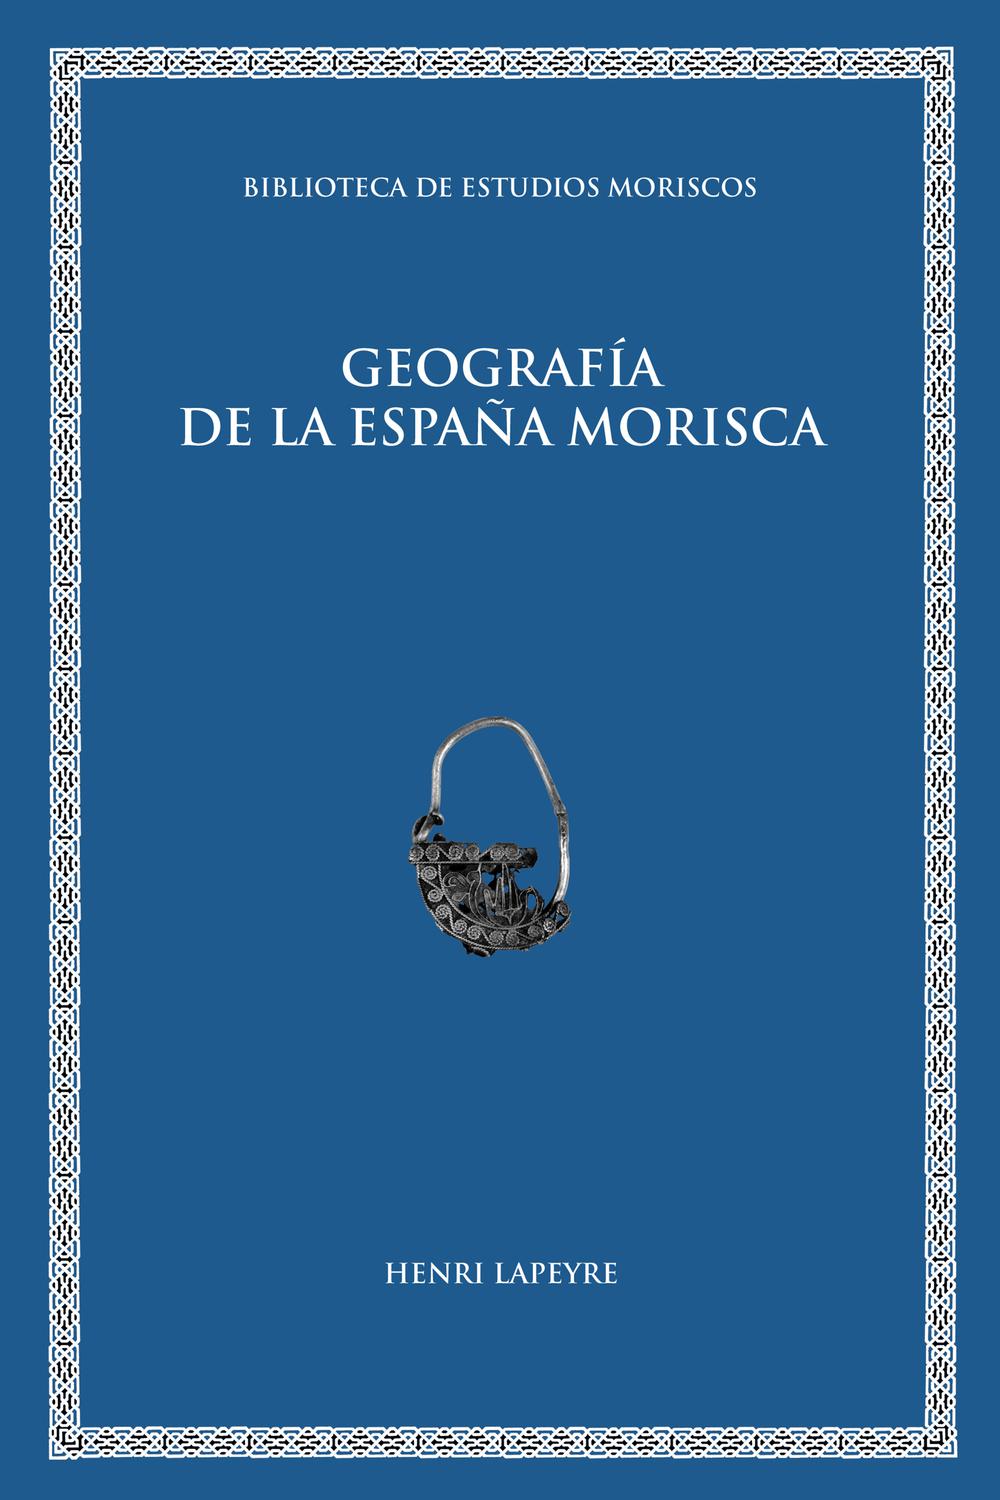 Geografía de la España morisca - Henry Lapeyre, Luis C. Rodríguez García